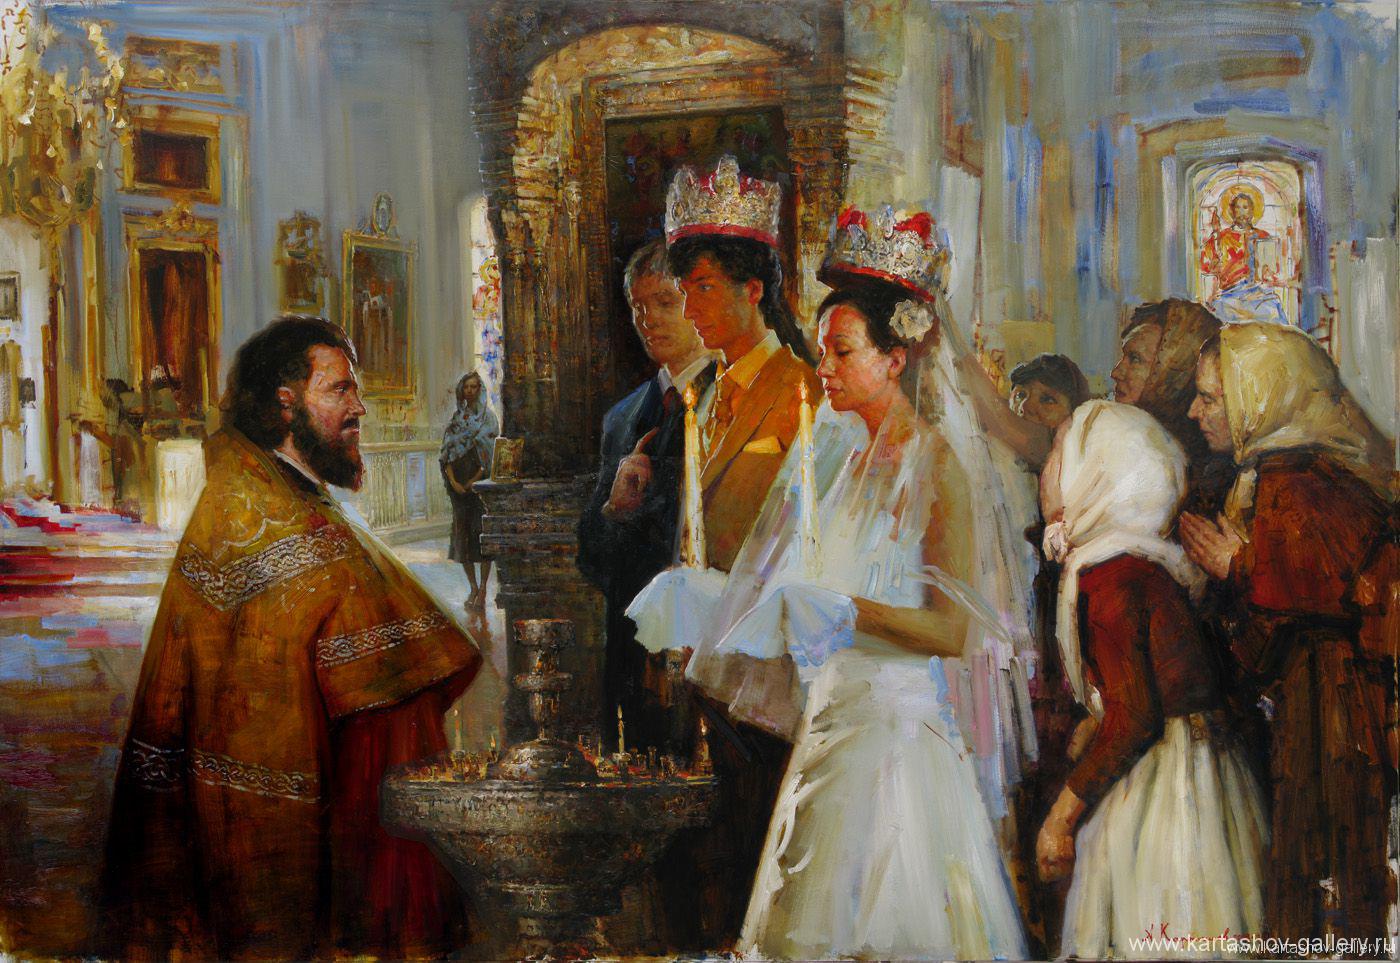 Венчание в православной церкви, худ. Андрей Карташов.